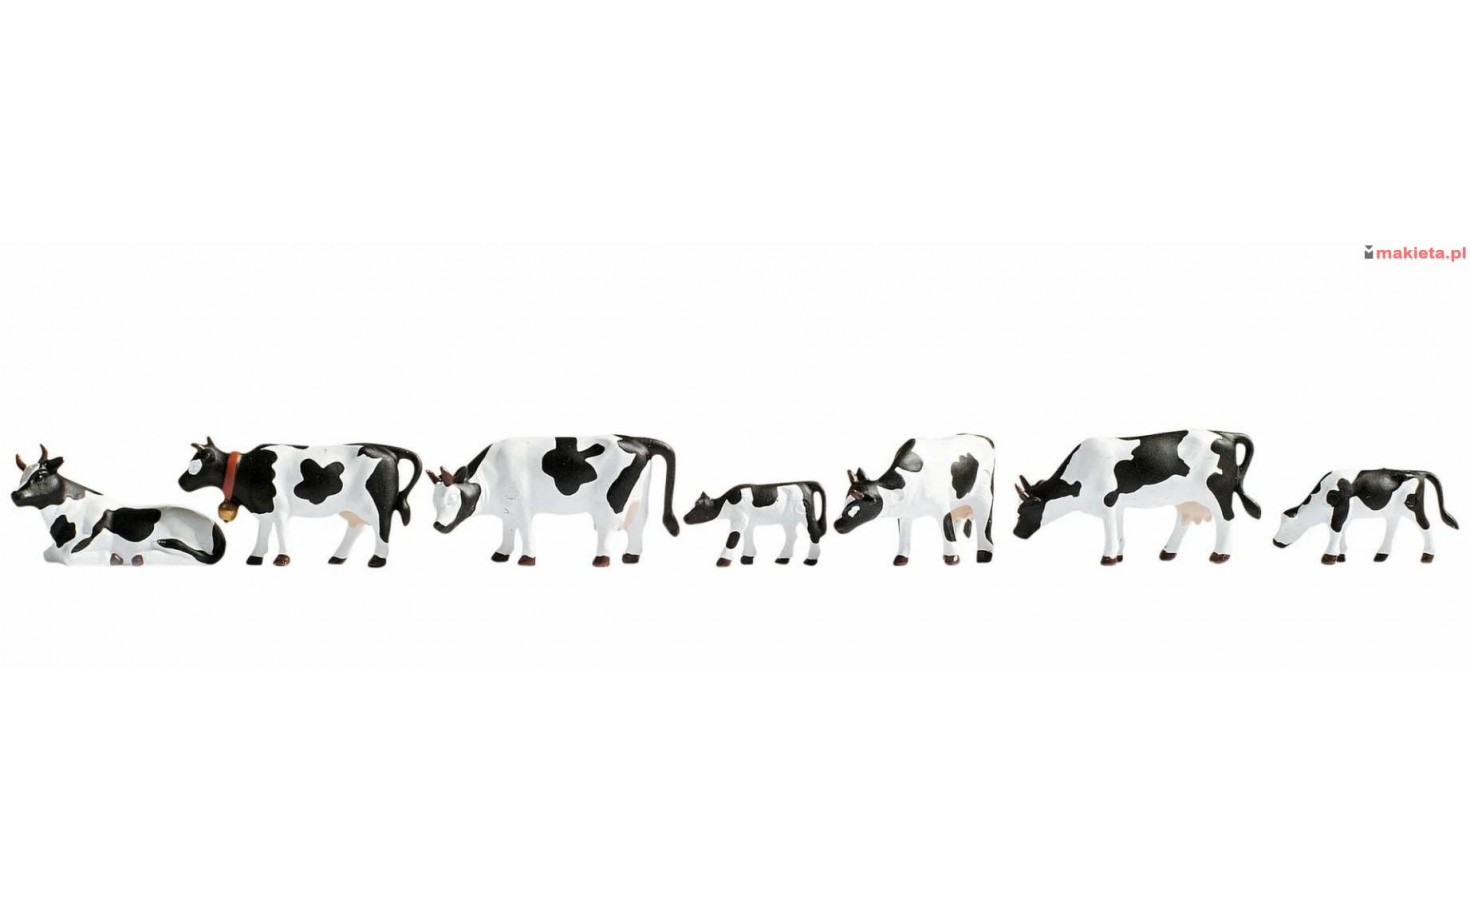 NOCH 36721. Krowy łaciate, zestaw figurek, skala N 1:160